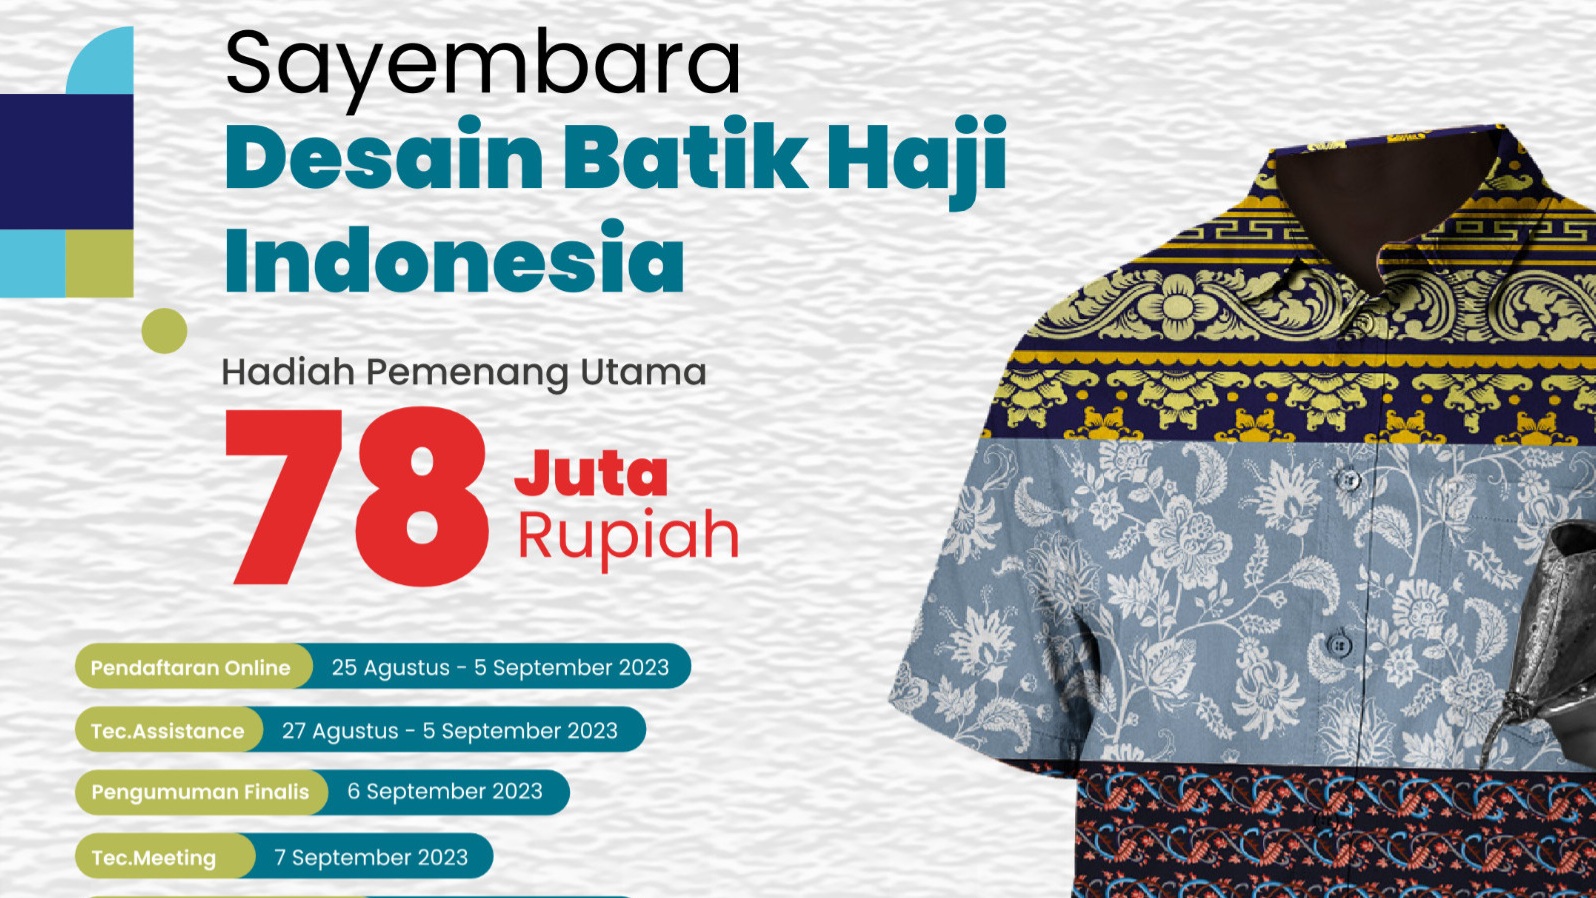 Sayembara desain batik jemaah haji Indonesia oleh kemenag RI